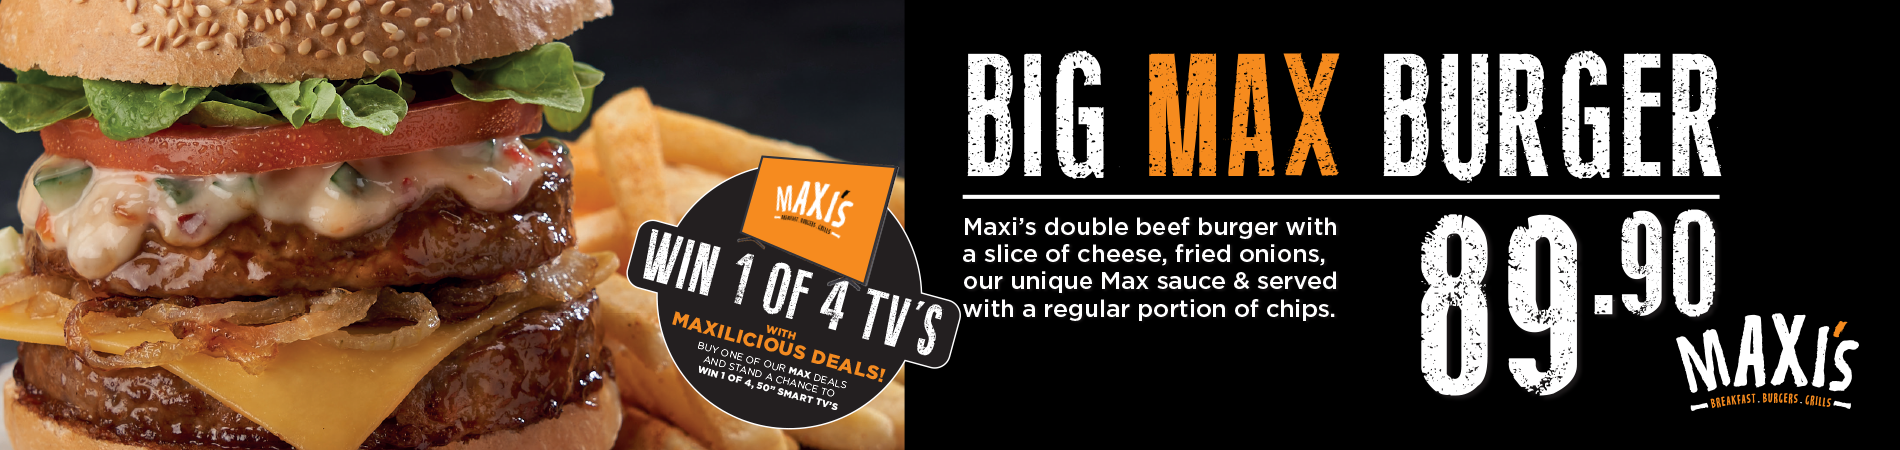 Big Max Burger 89.90